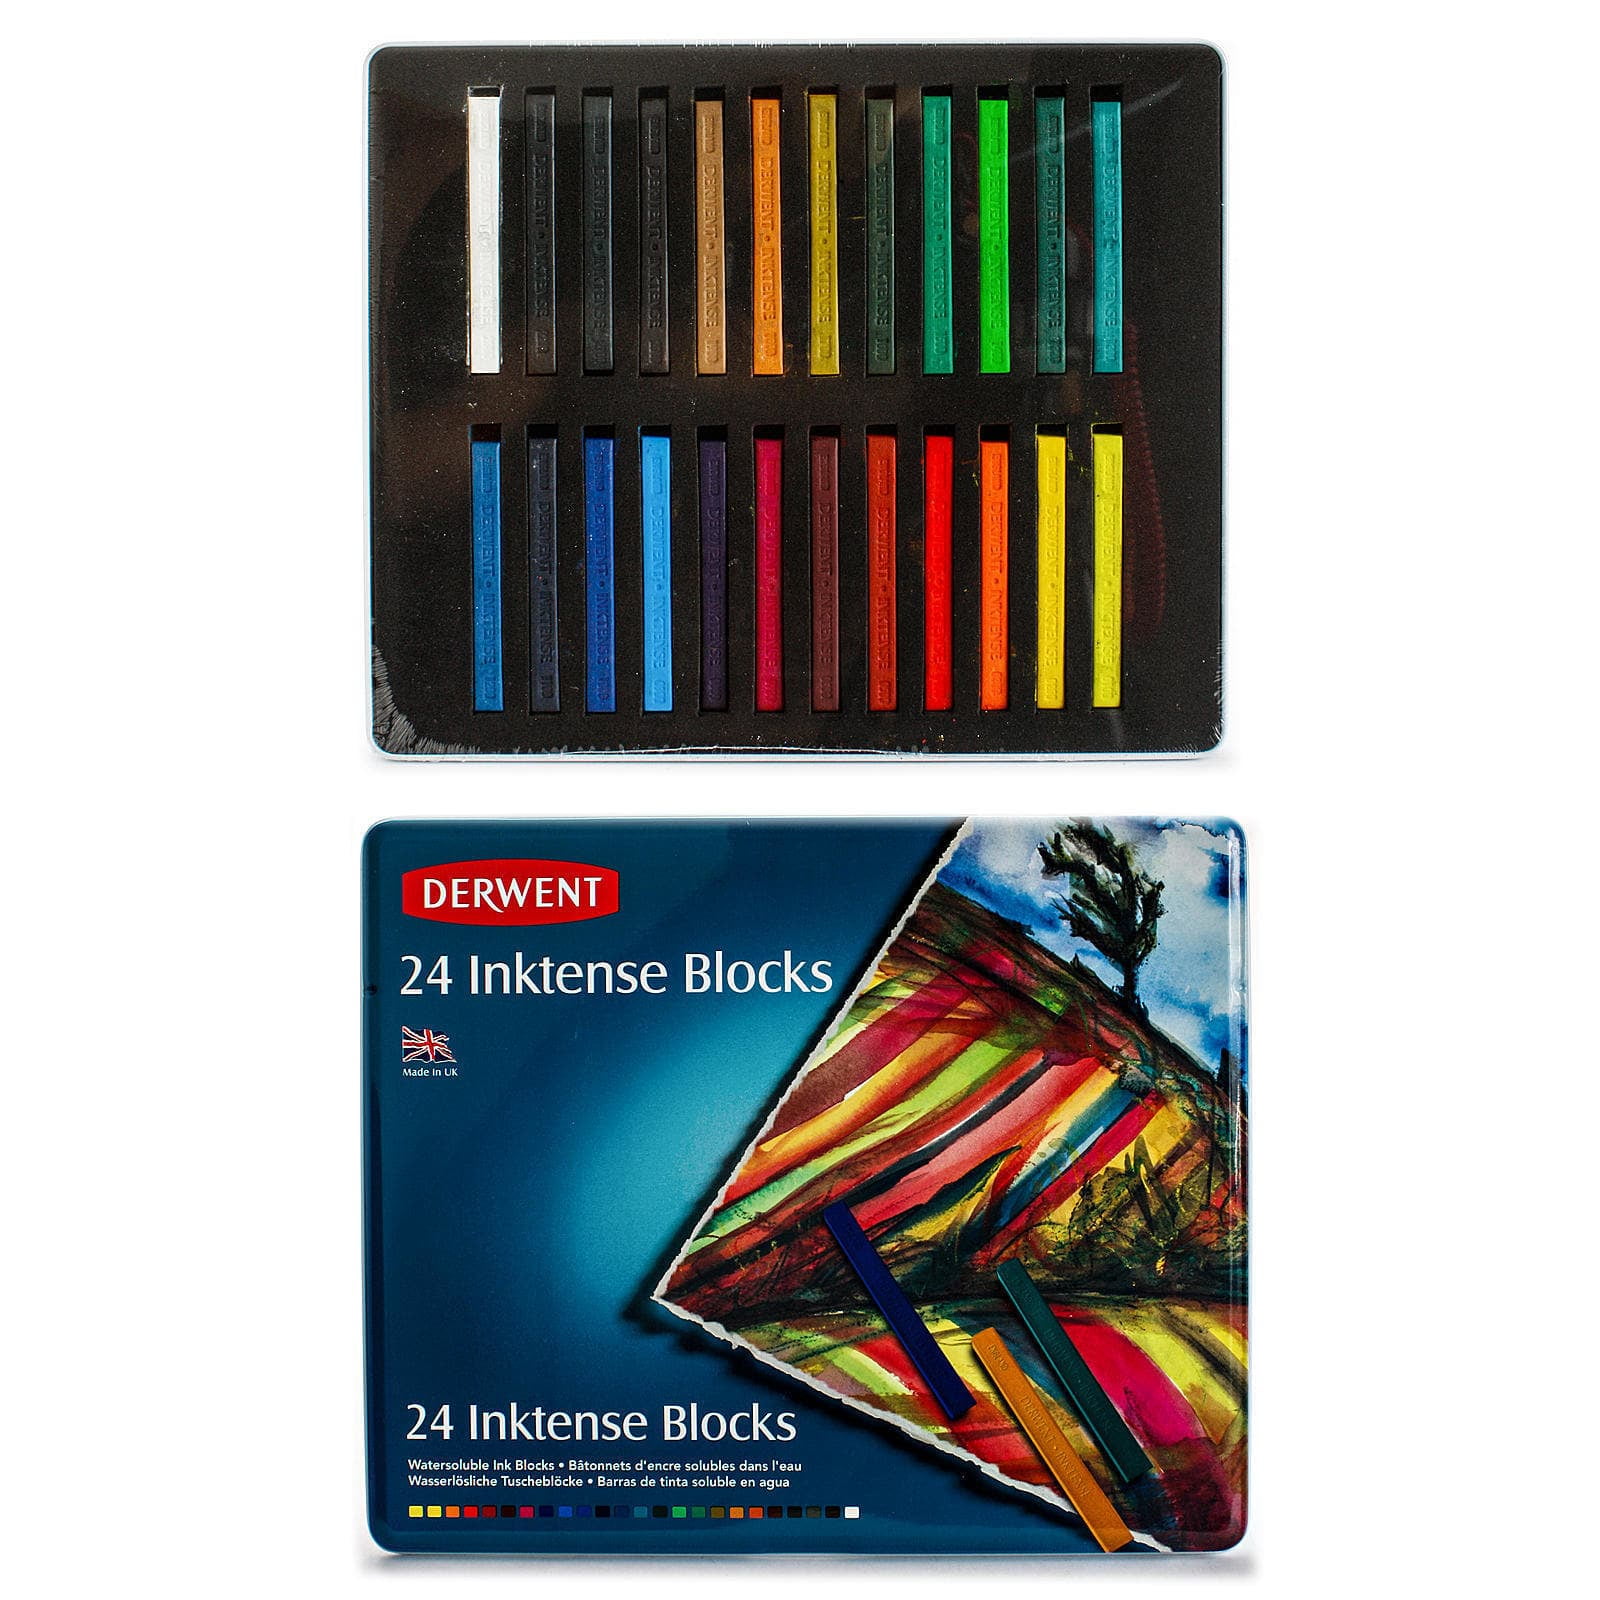 Derwent : Inktense Pencil : Tin Set of 12